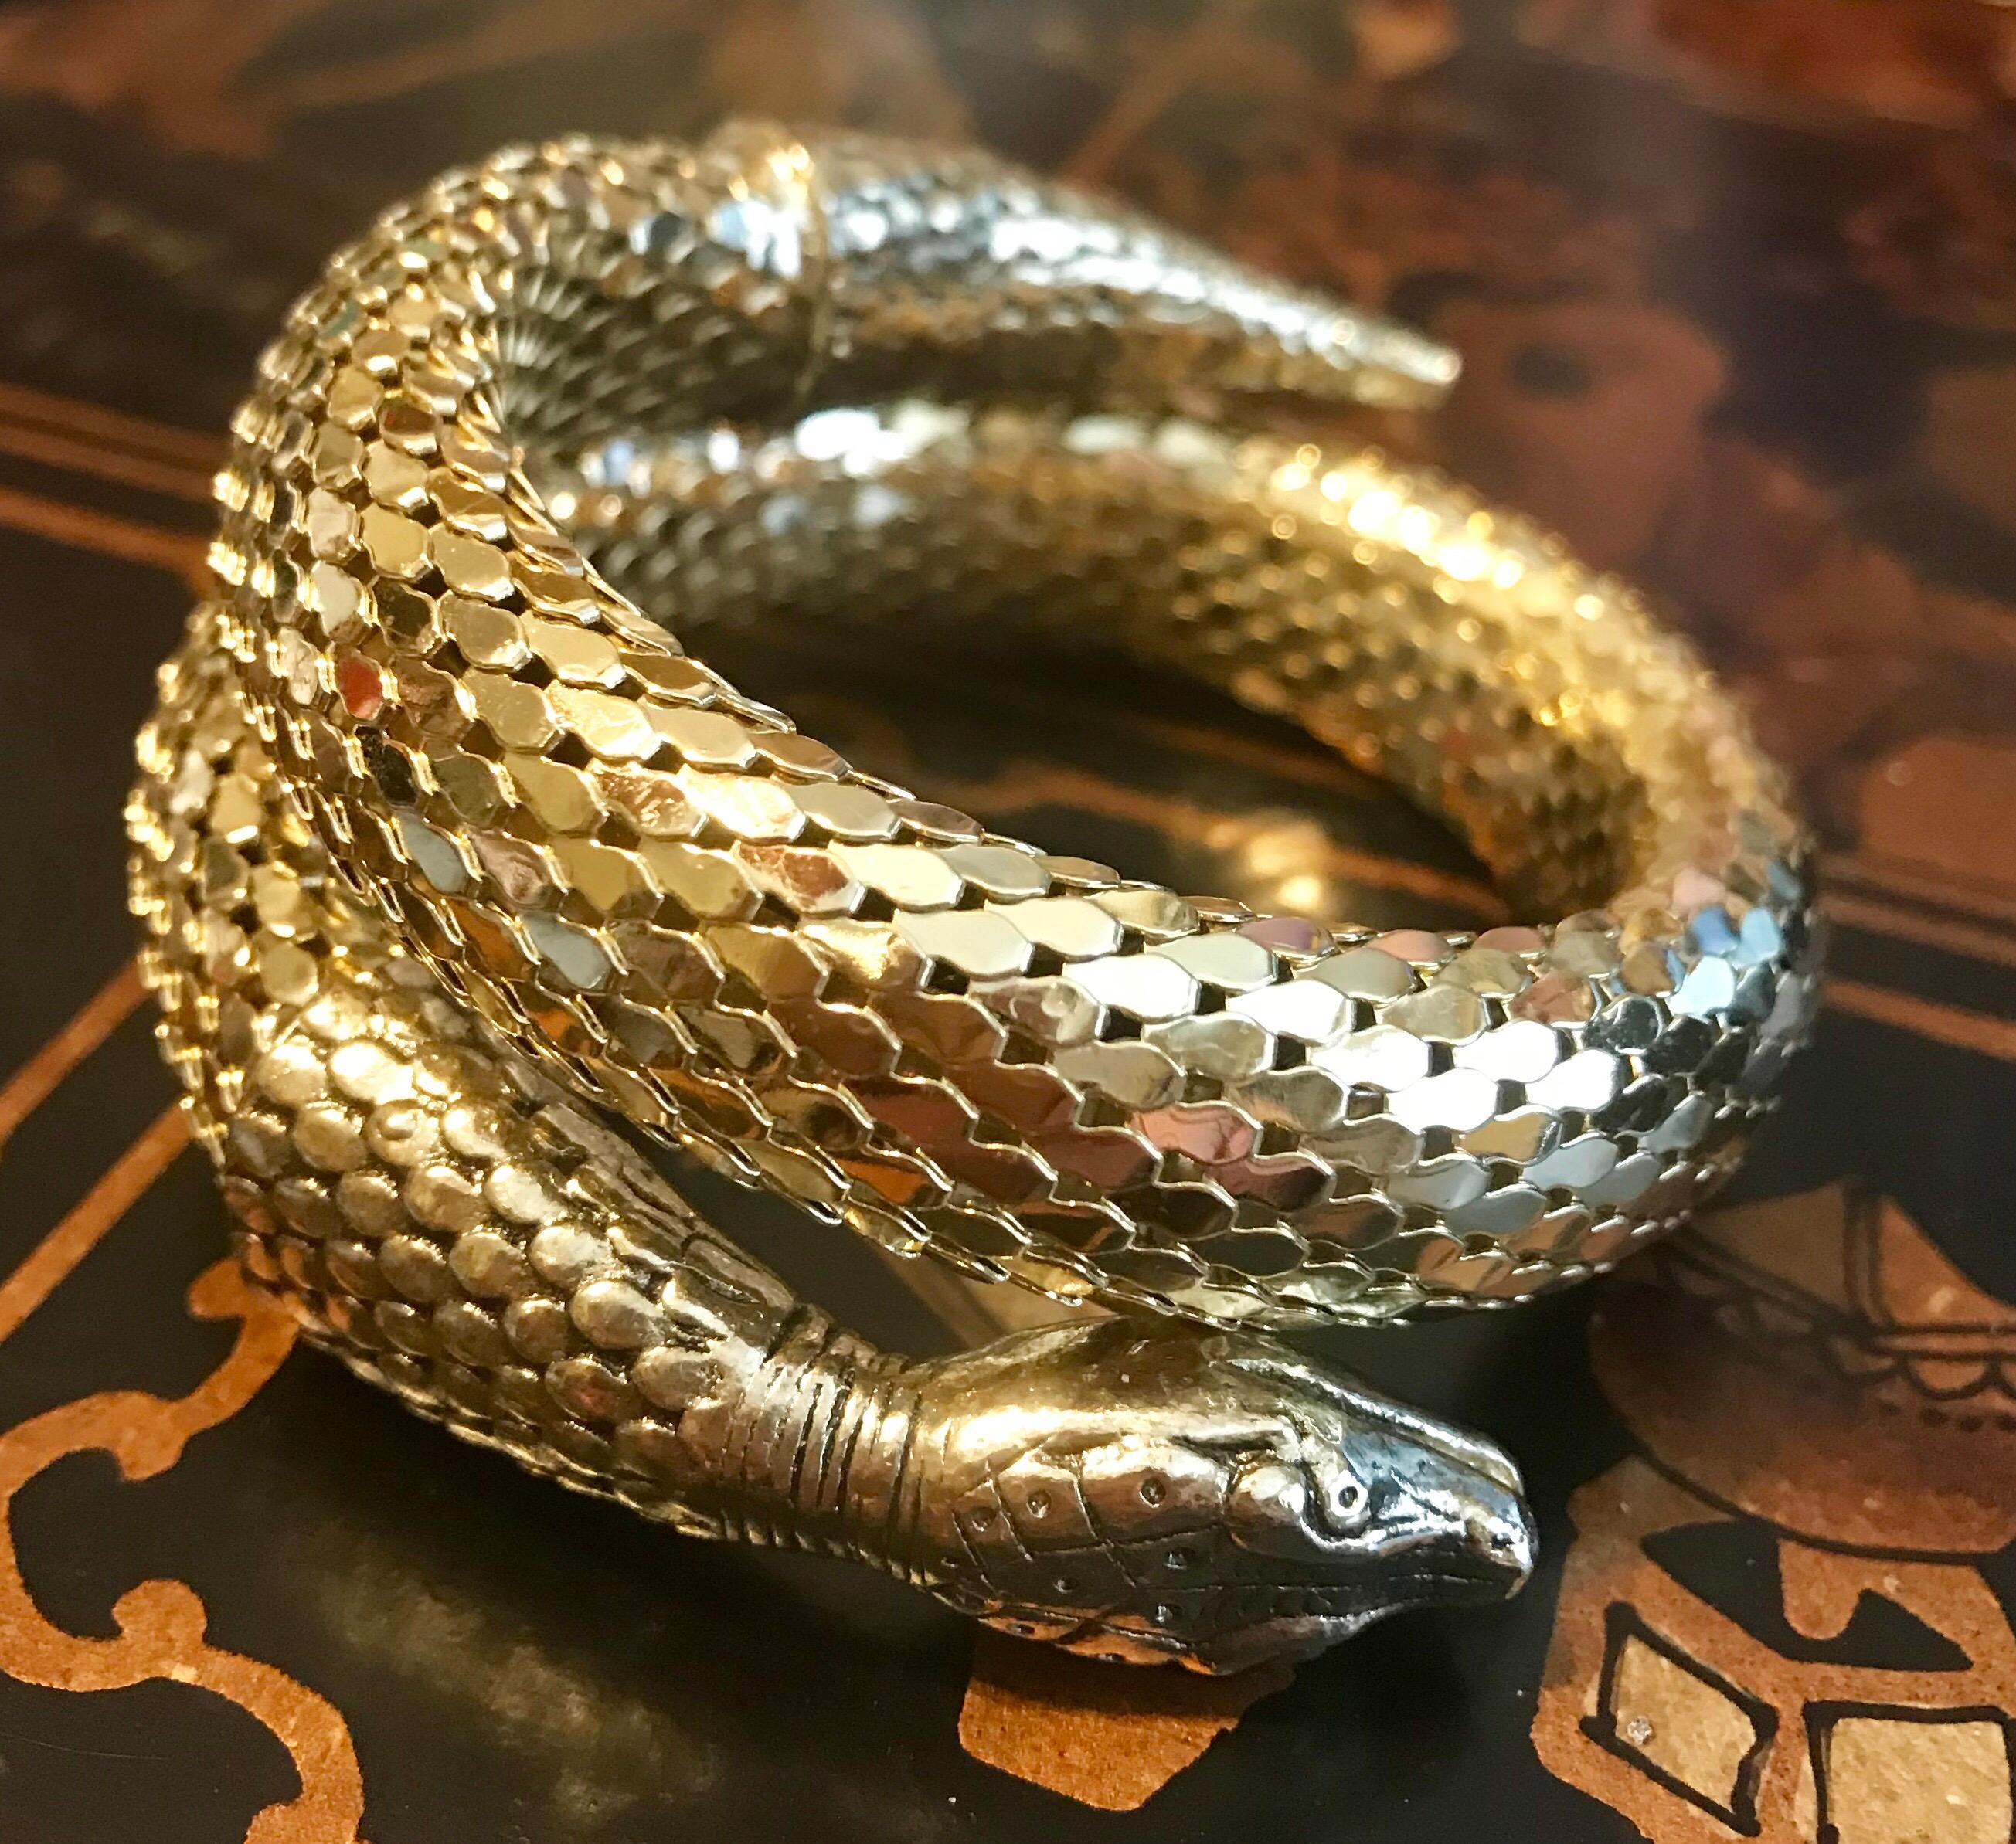 whiting and davis snake bracelet